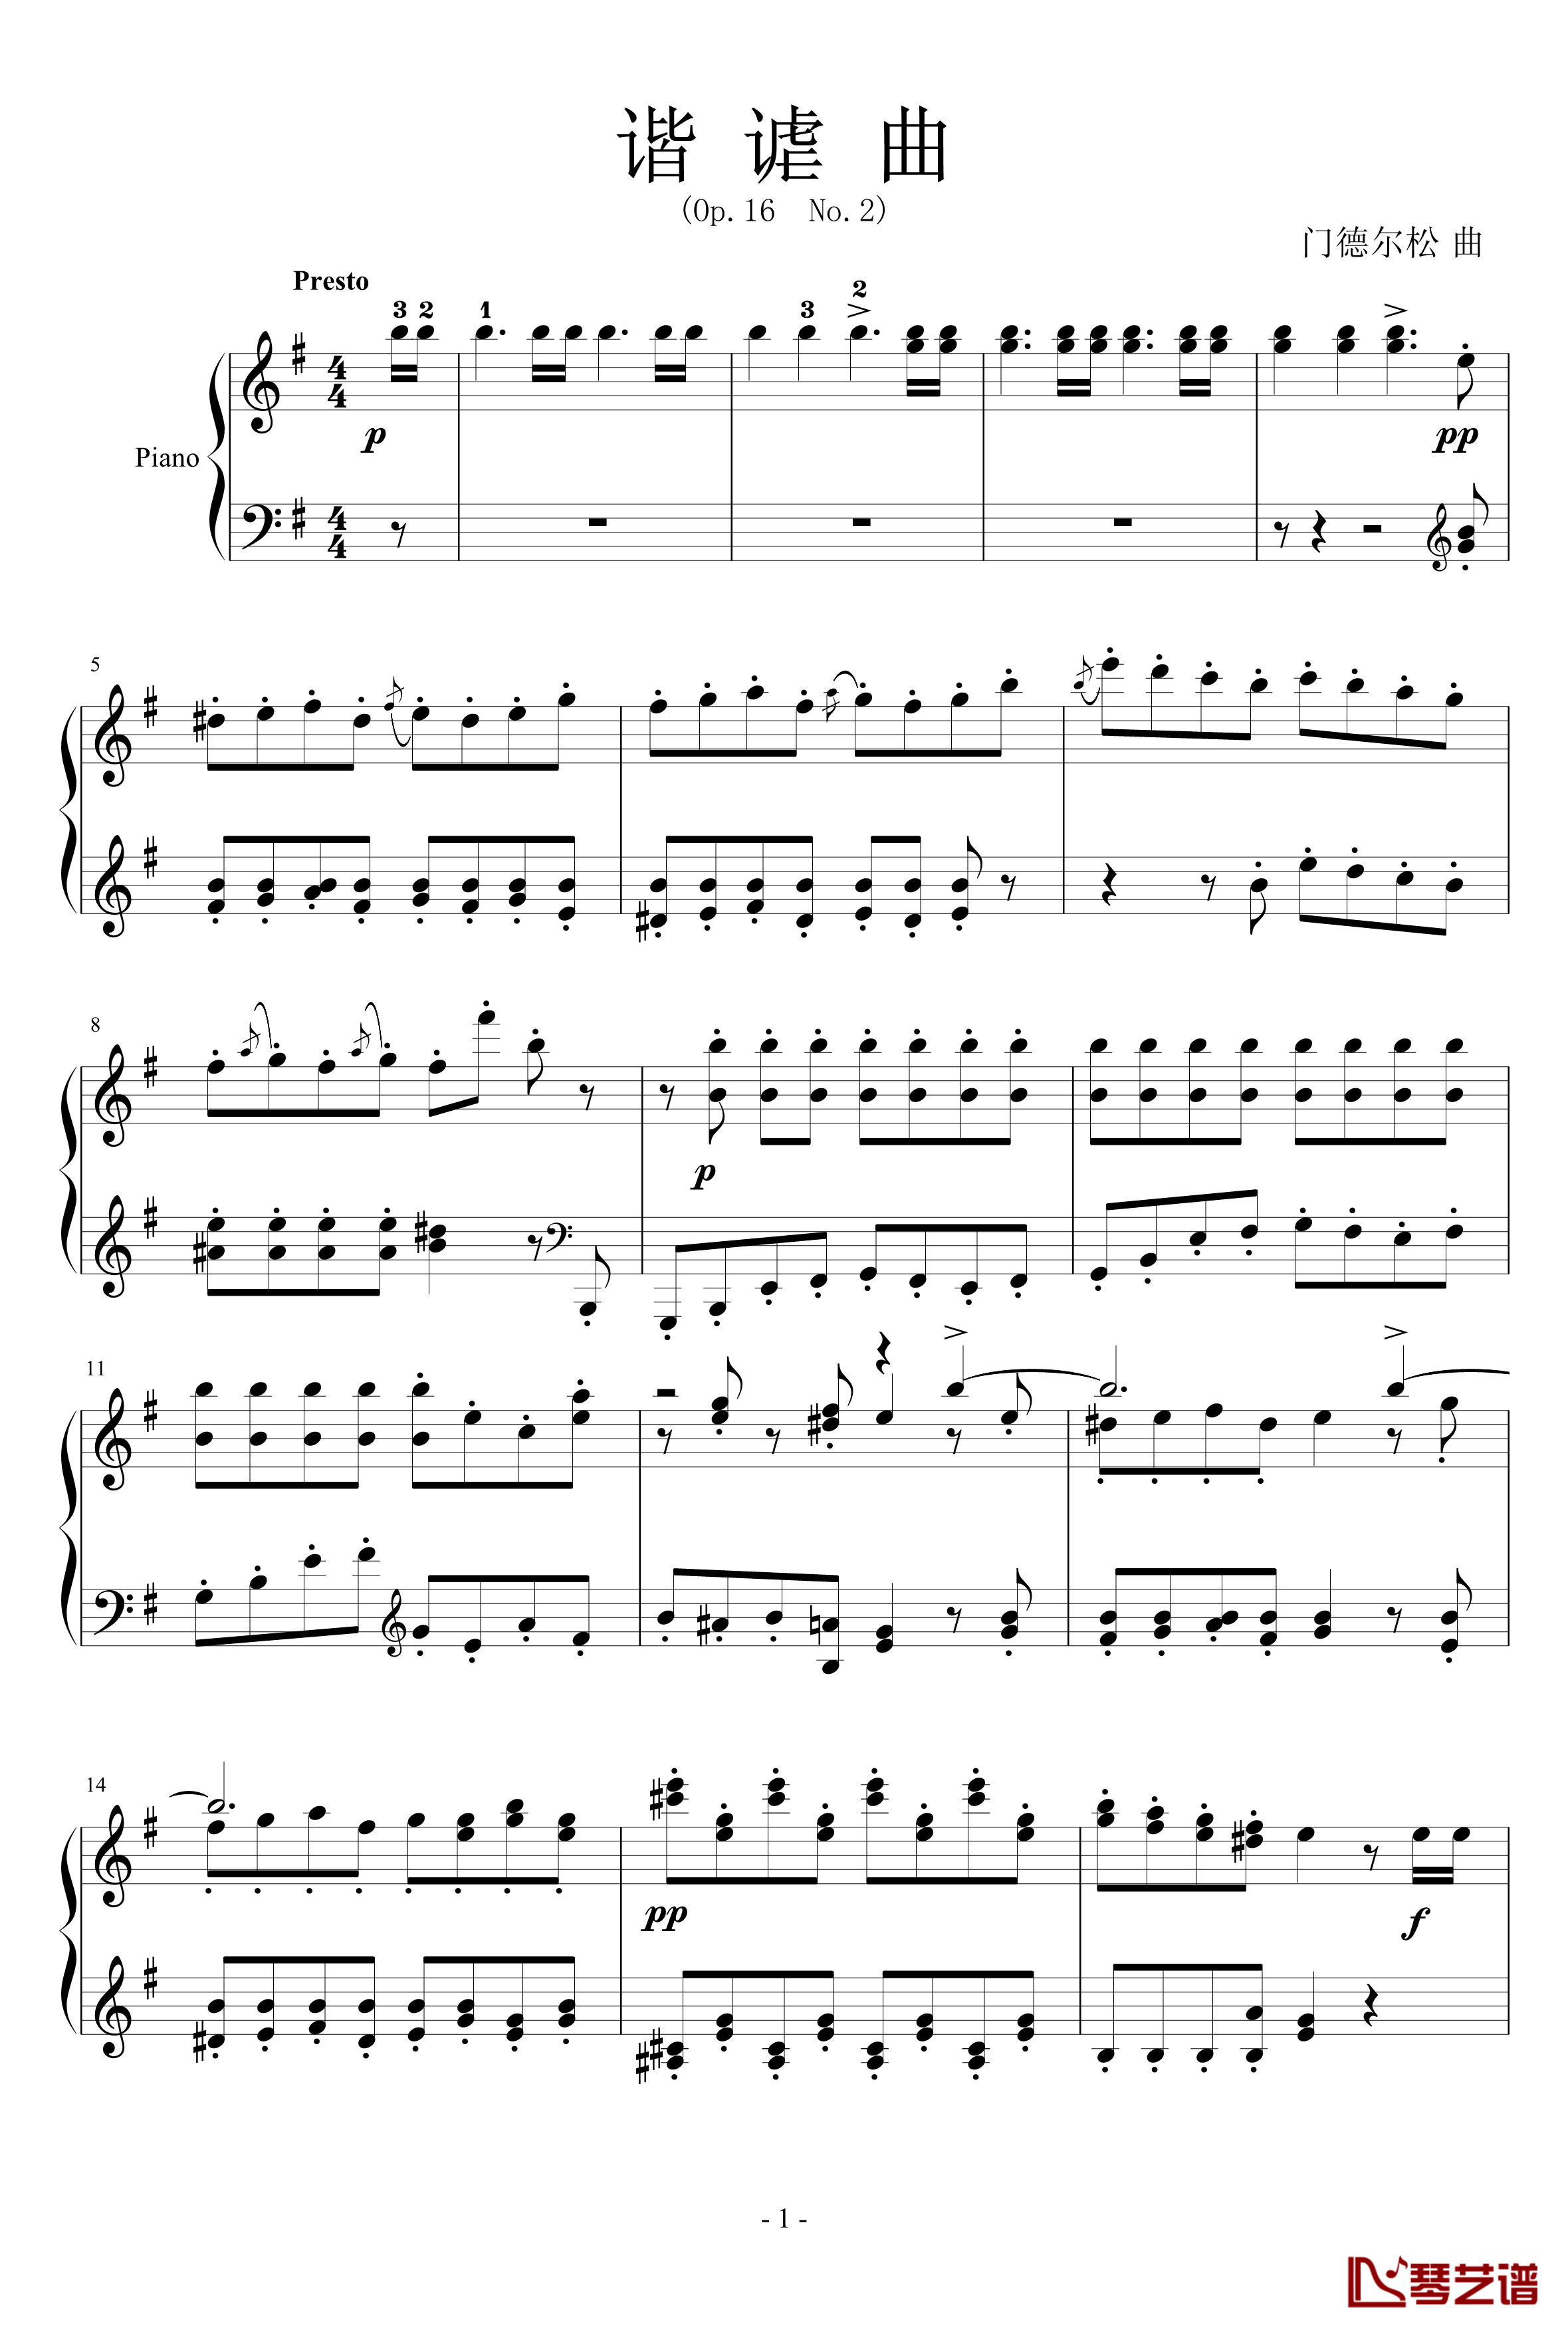 谐谑曲钢琴谱-Op.16 No.2-门德尔松1